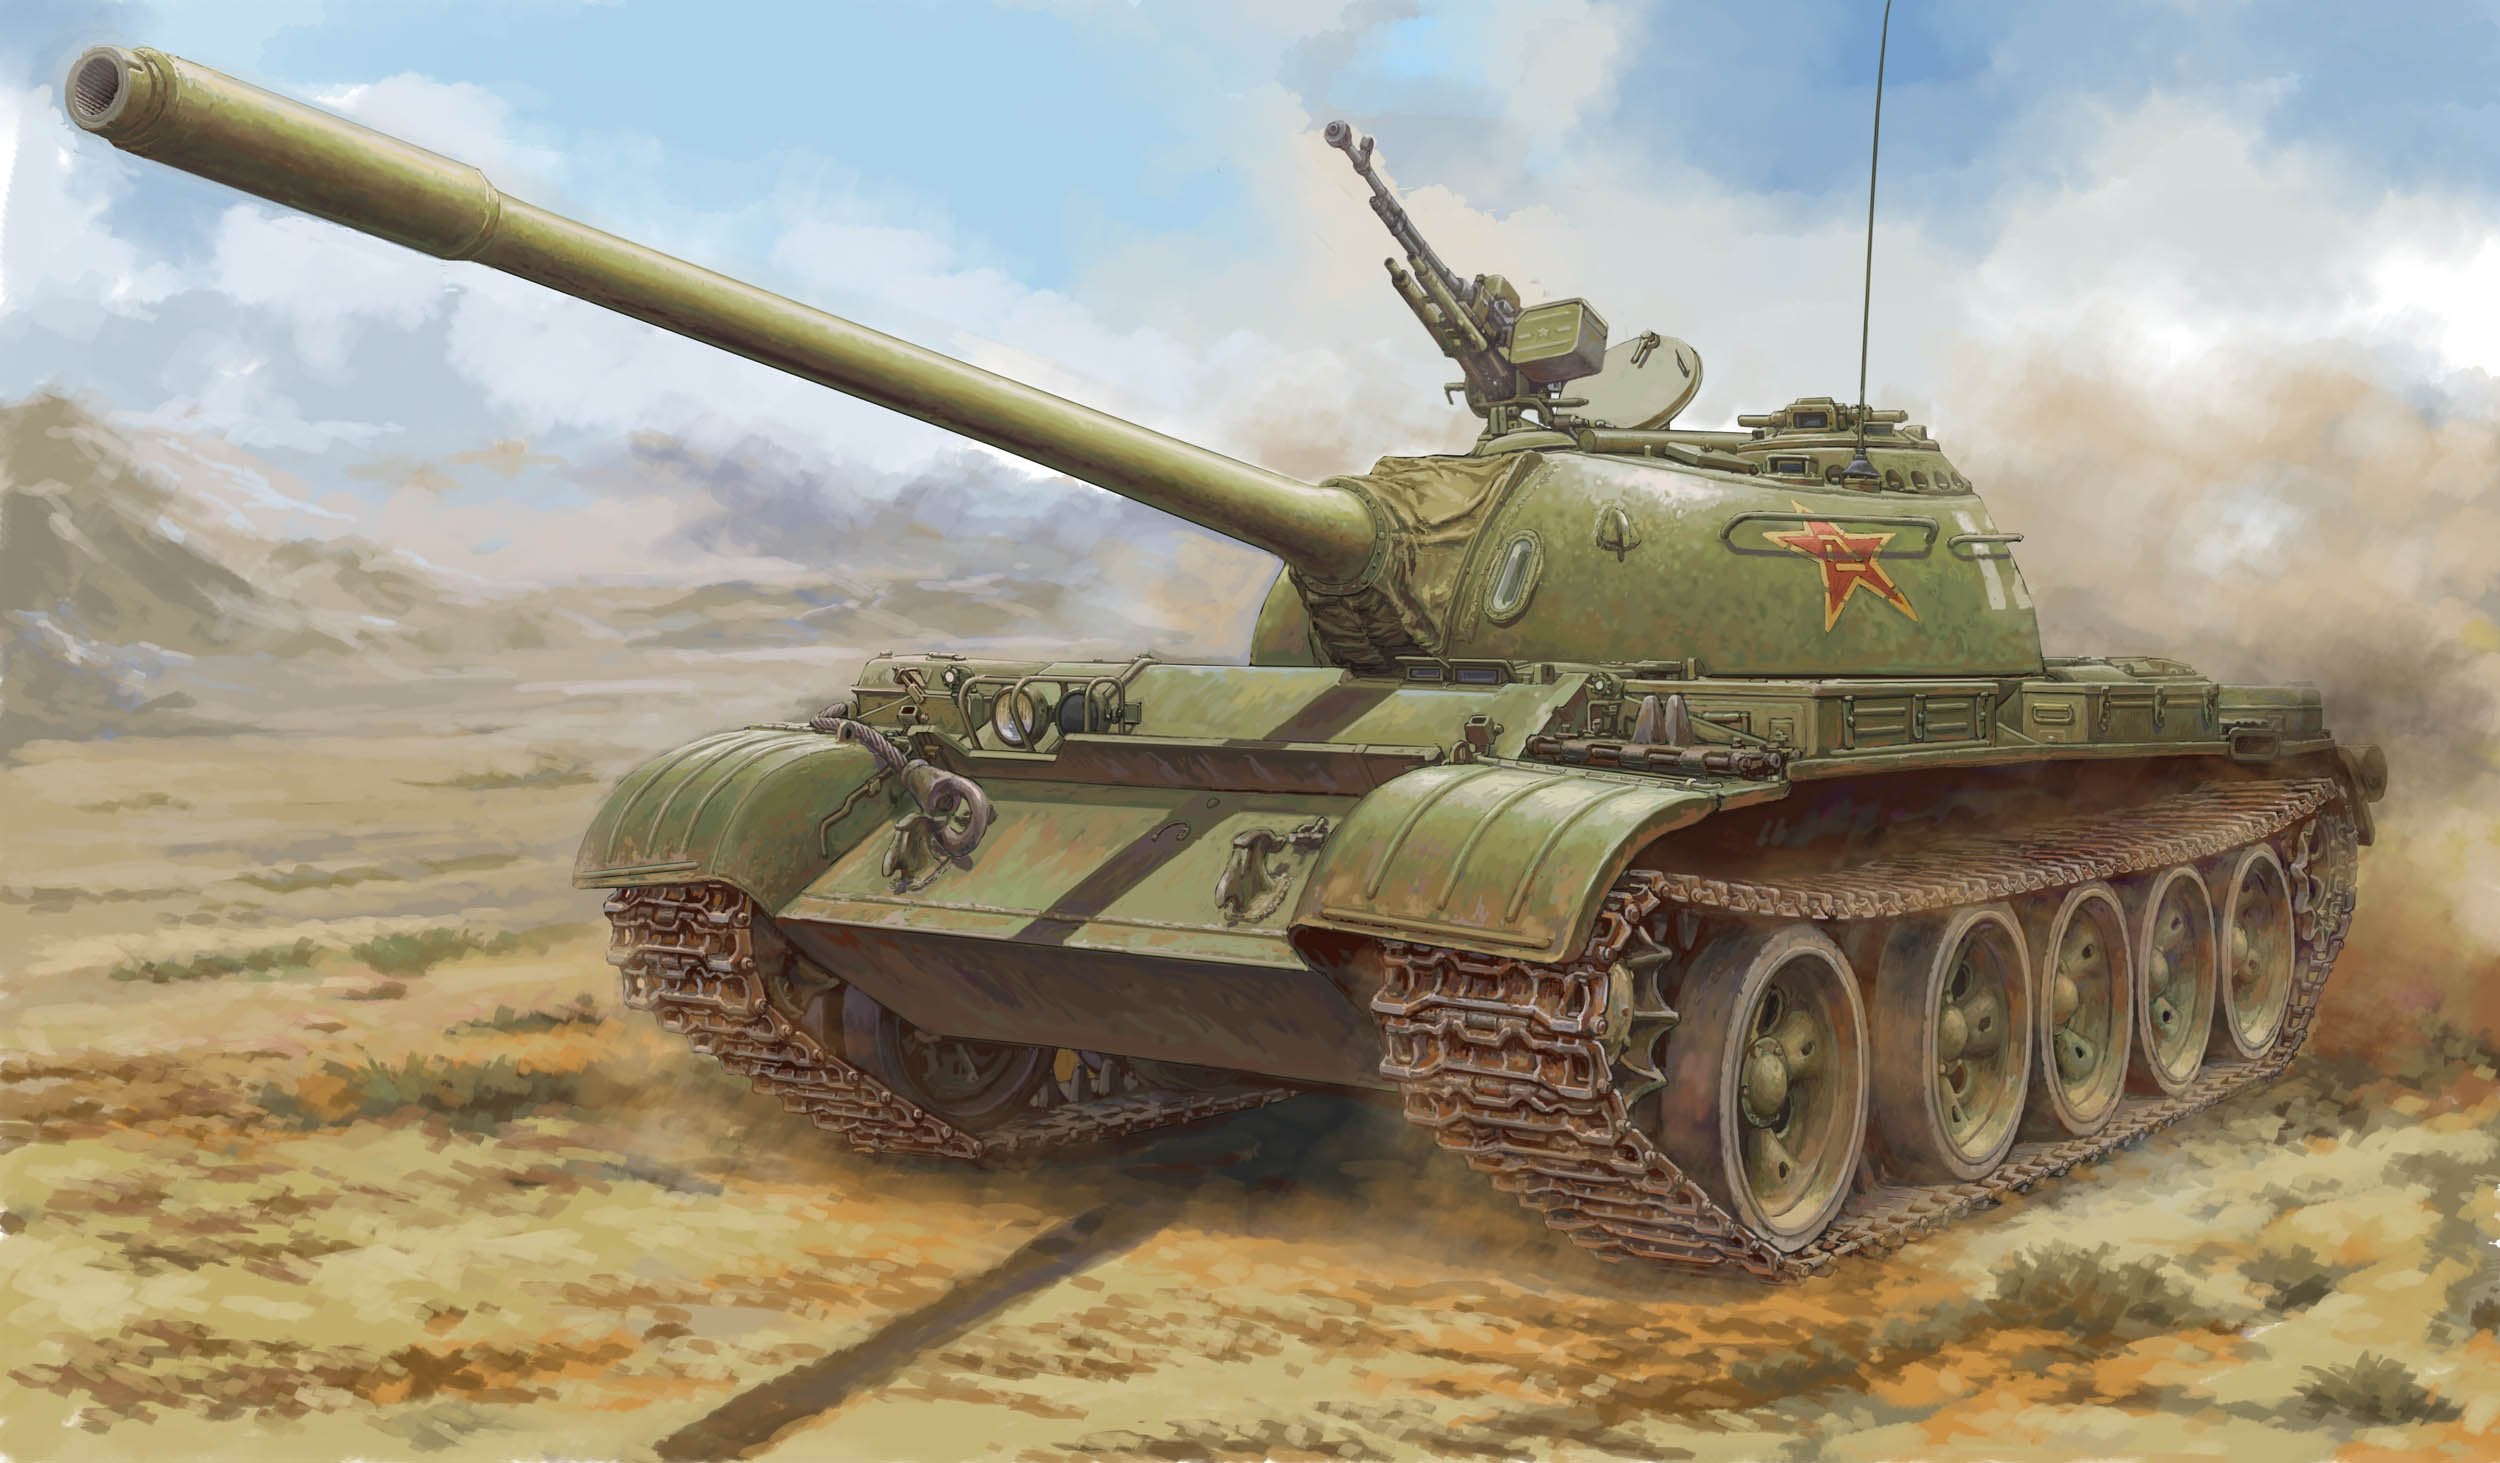 Hobbyboss 1:35 PLA 59 Medium Tank